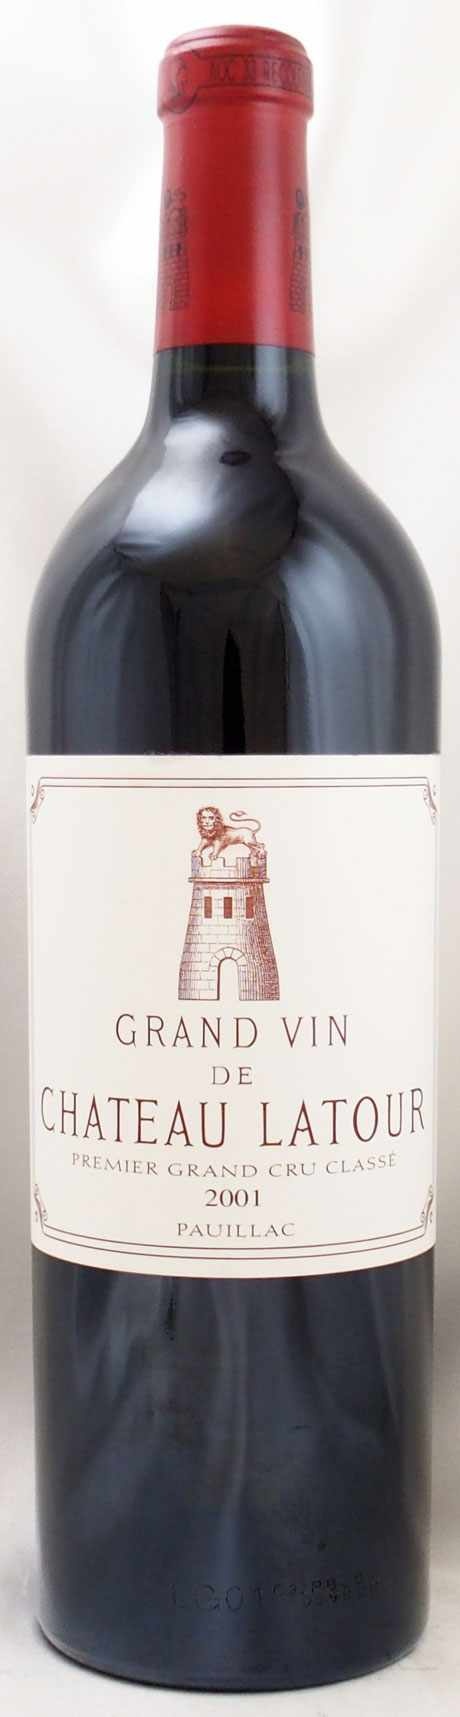 シャトー ラトゥール 2001 Chateau Latour フランス ボルドー 赤ワイン-